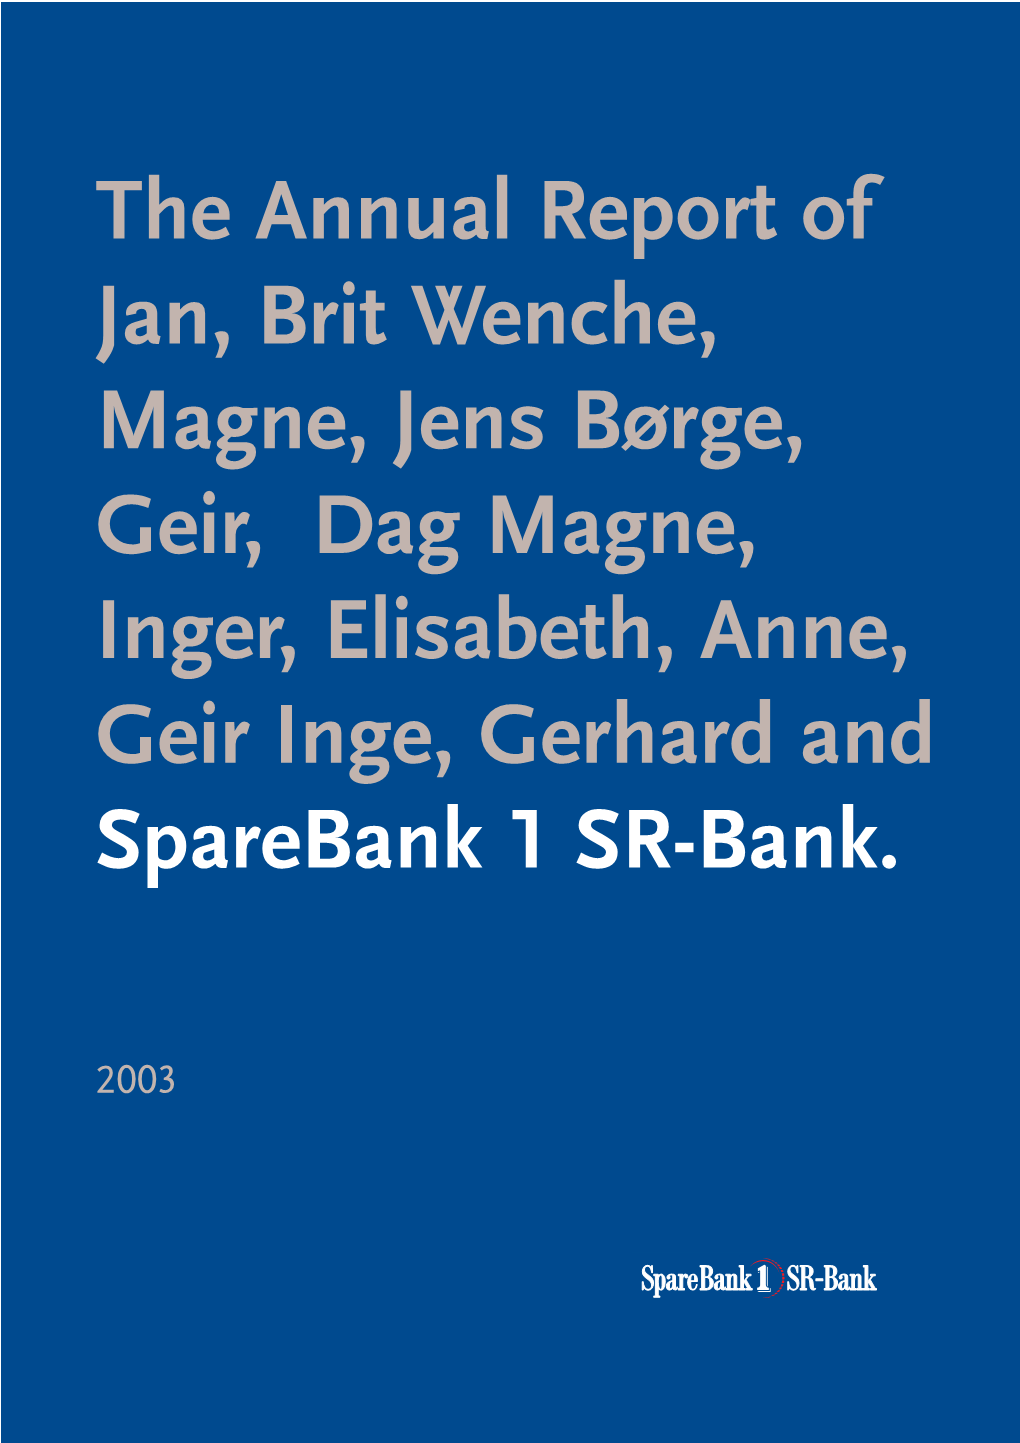 The Annual Report of Jan, Brit Wenche, Magne, Jens Børge, Geir, Dag Magne, Inger, Elisabeth, Anne, Geir Inge, Gerhard and Sparebank 1 SR-Bank